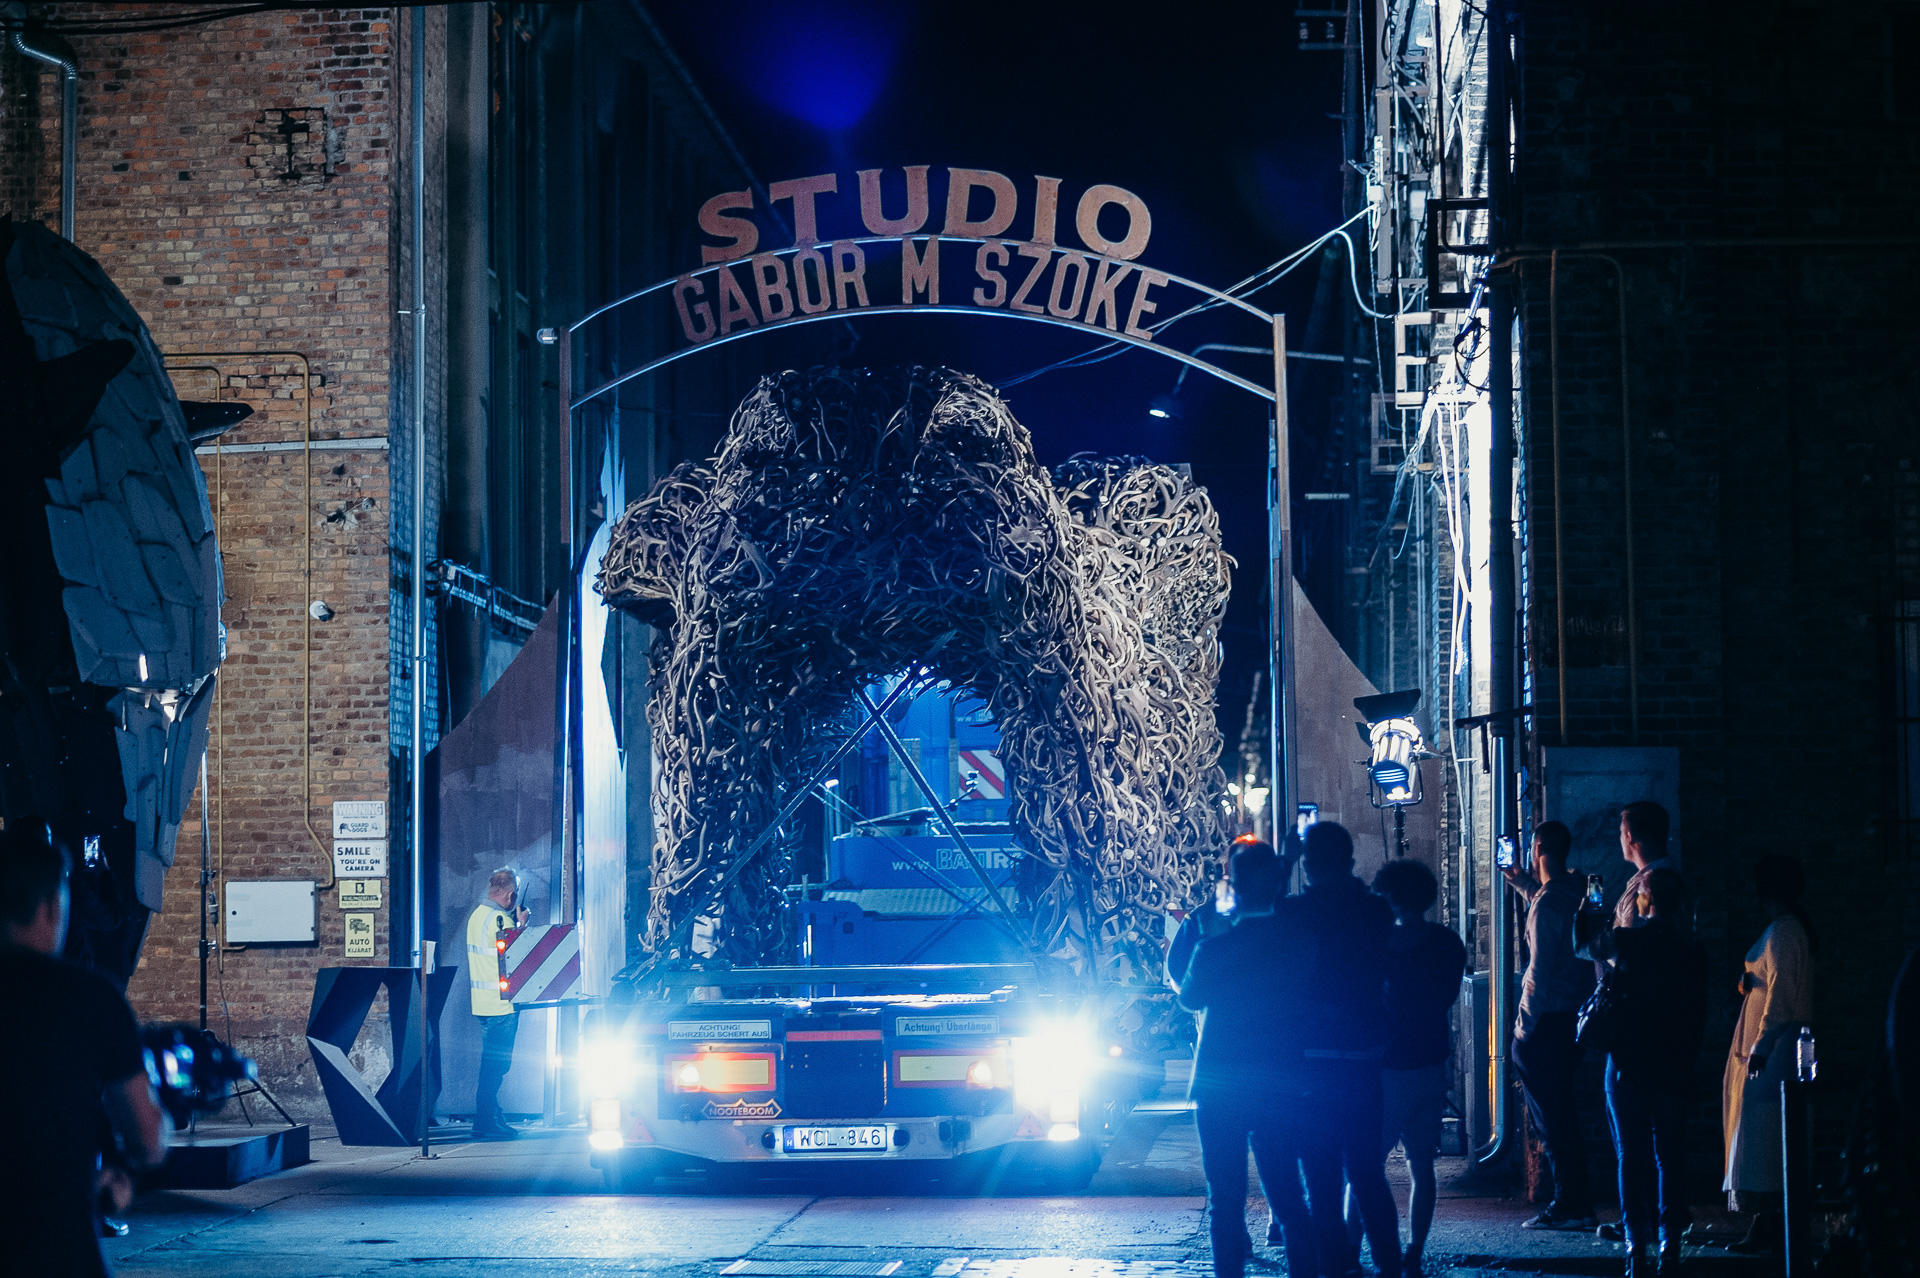 Útra kelt a vadászati kiállítás gigantikus méretű szarvasagancs kapuja – képriport